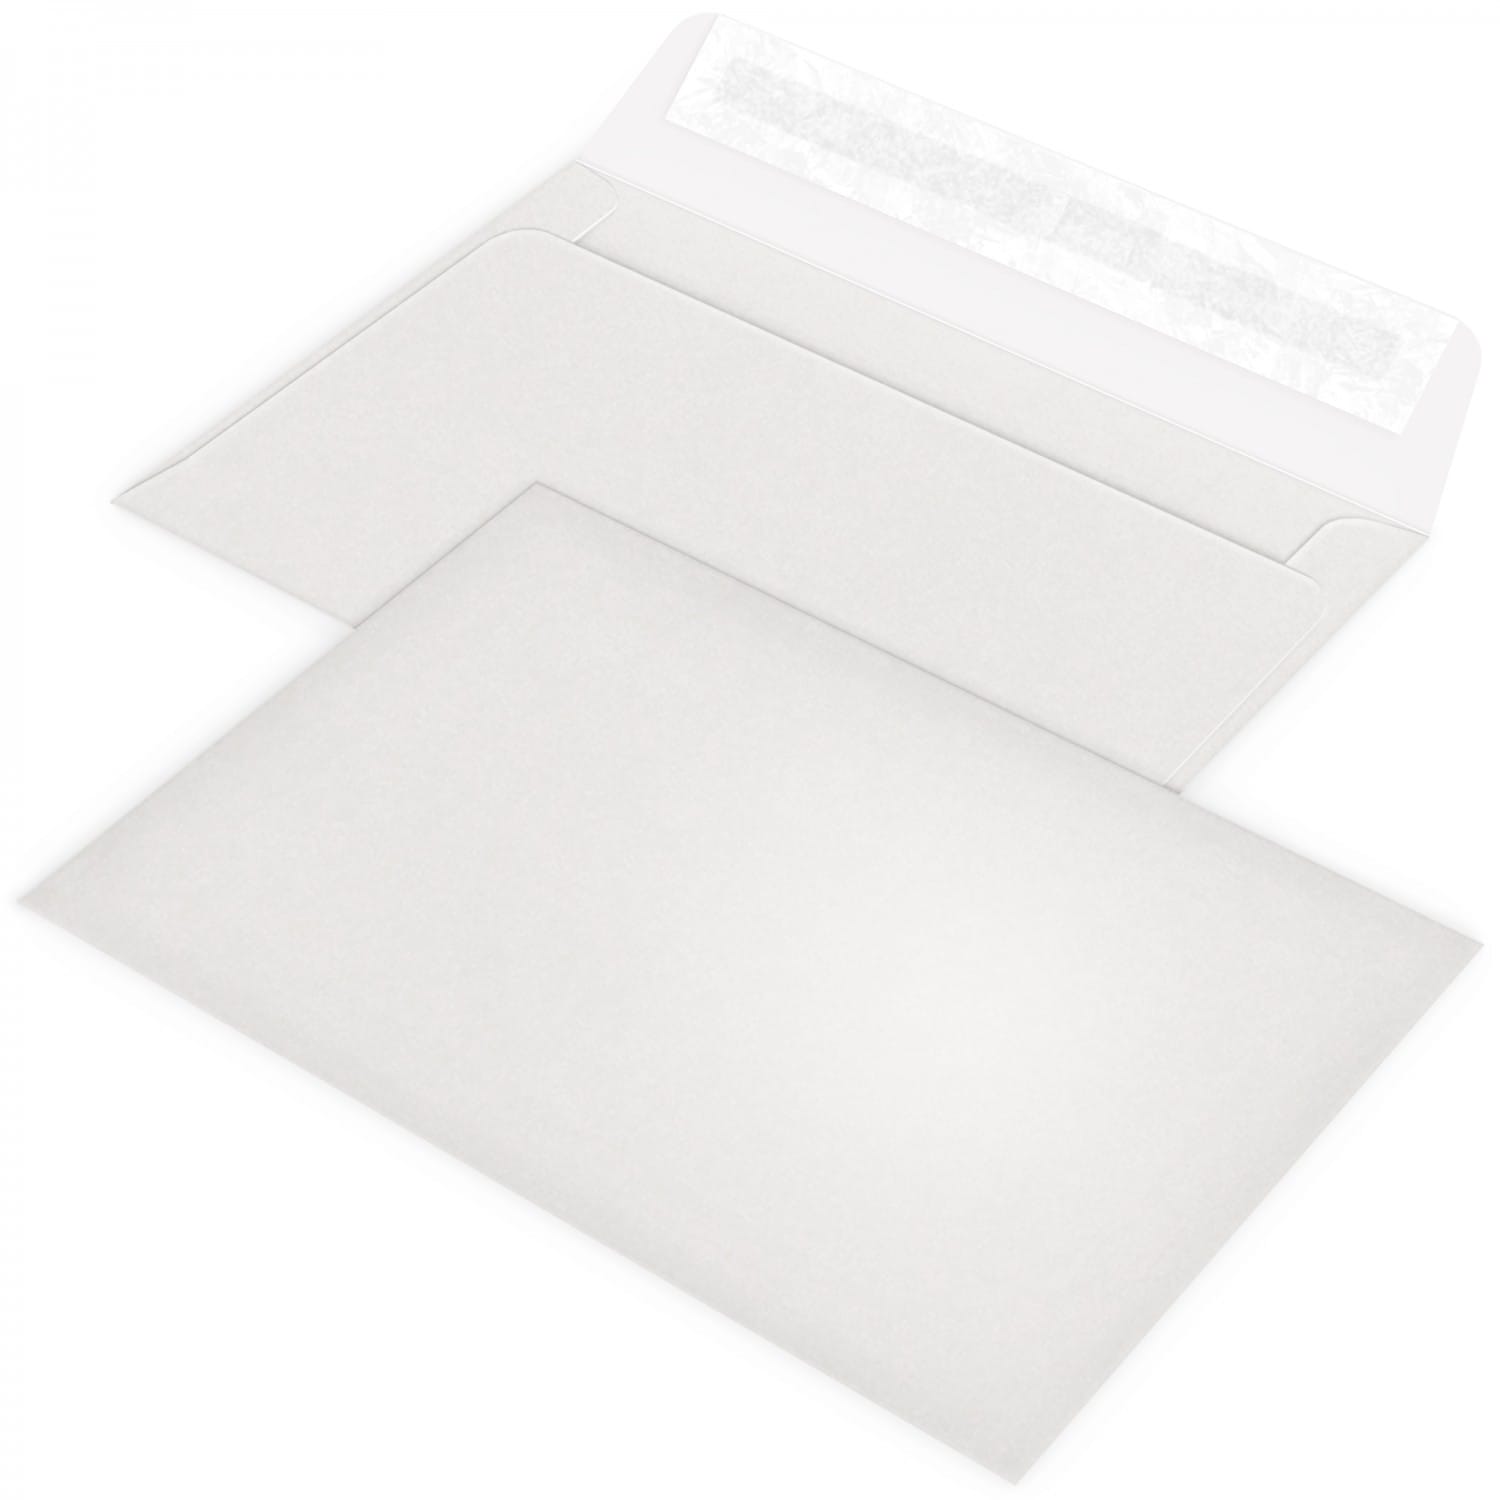 Lot de 20 Enveloppes plastiques blanches opaques - Pochette d